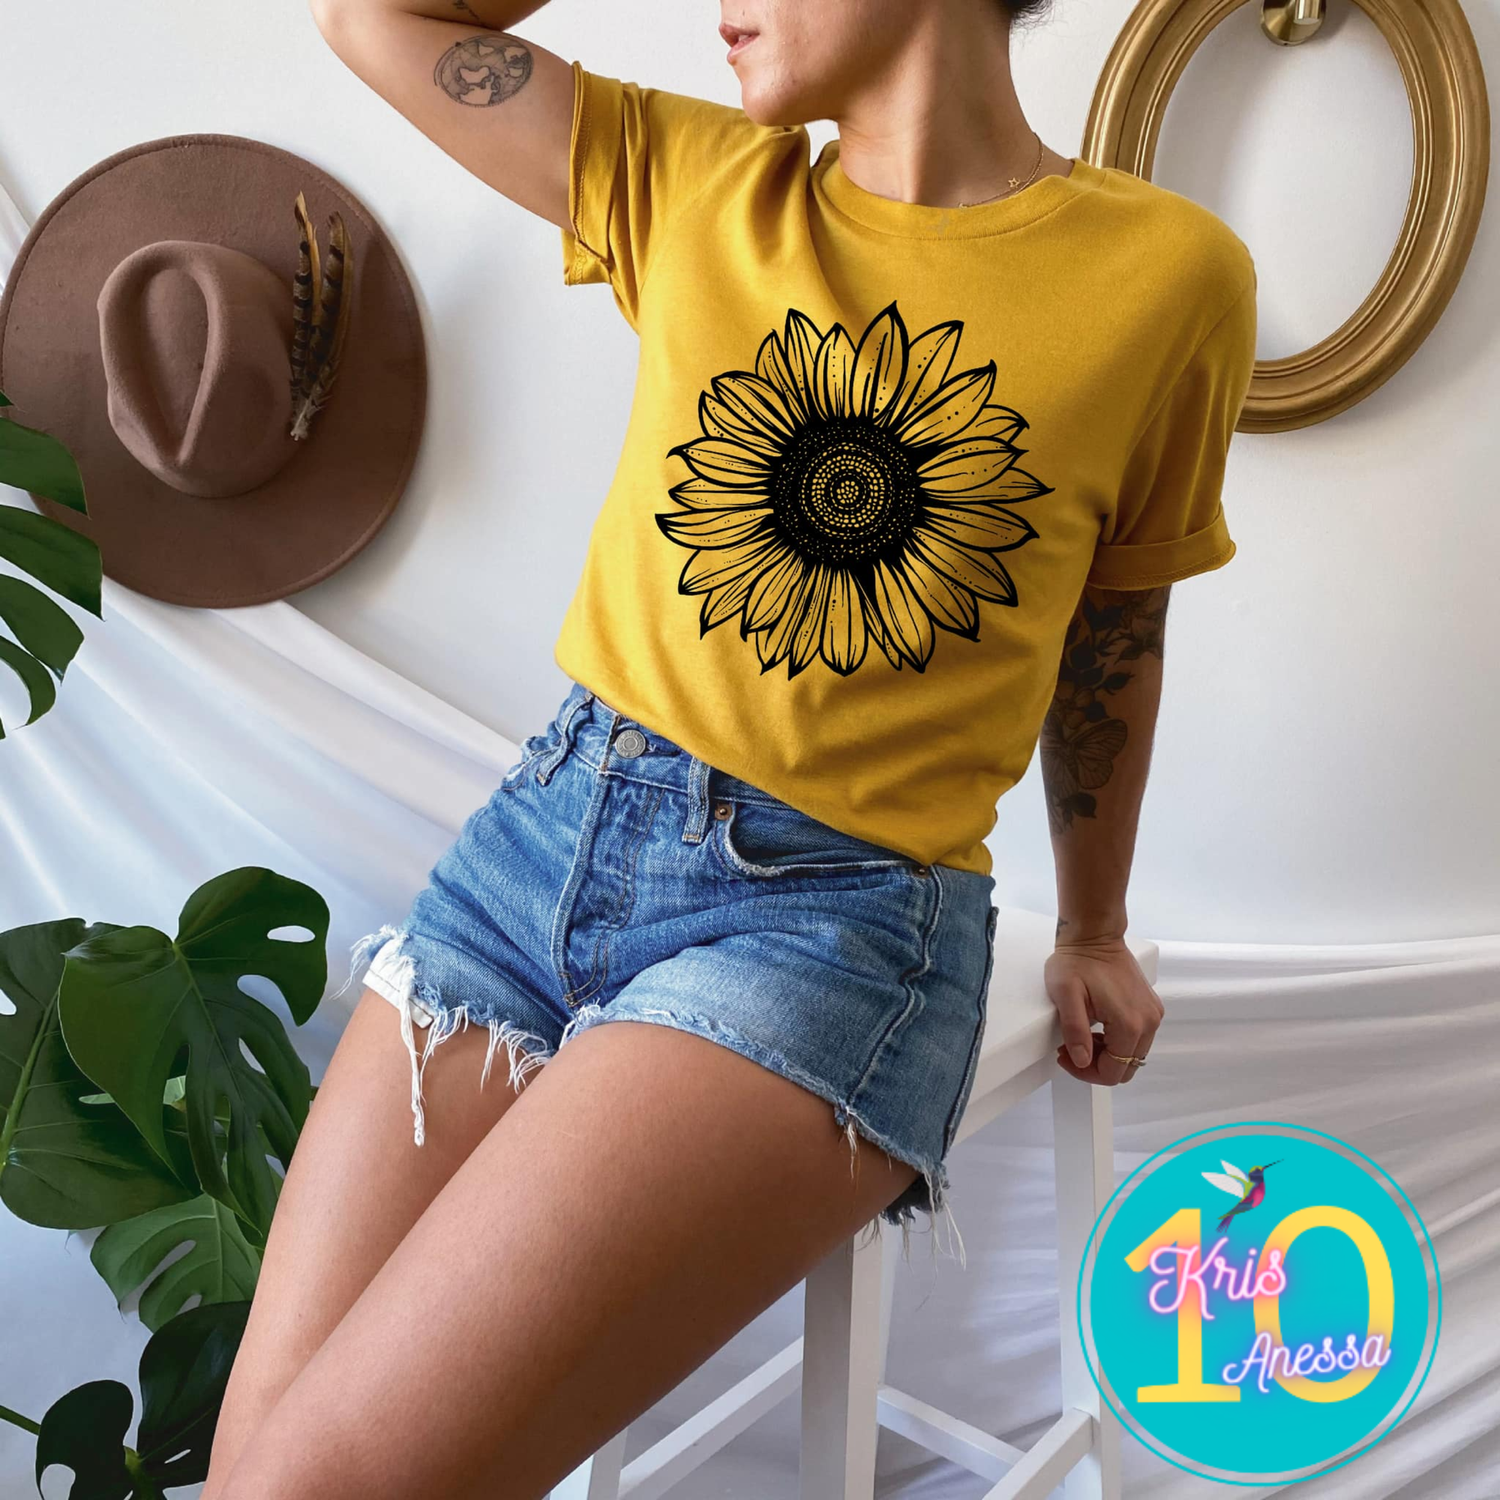 hvordan man bruger Kunde Bemærkelsesværdig Sunflower Screen Print — kris10anessa